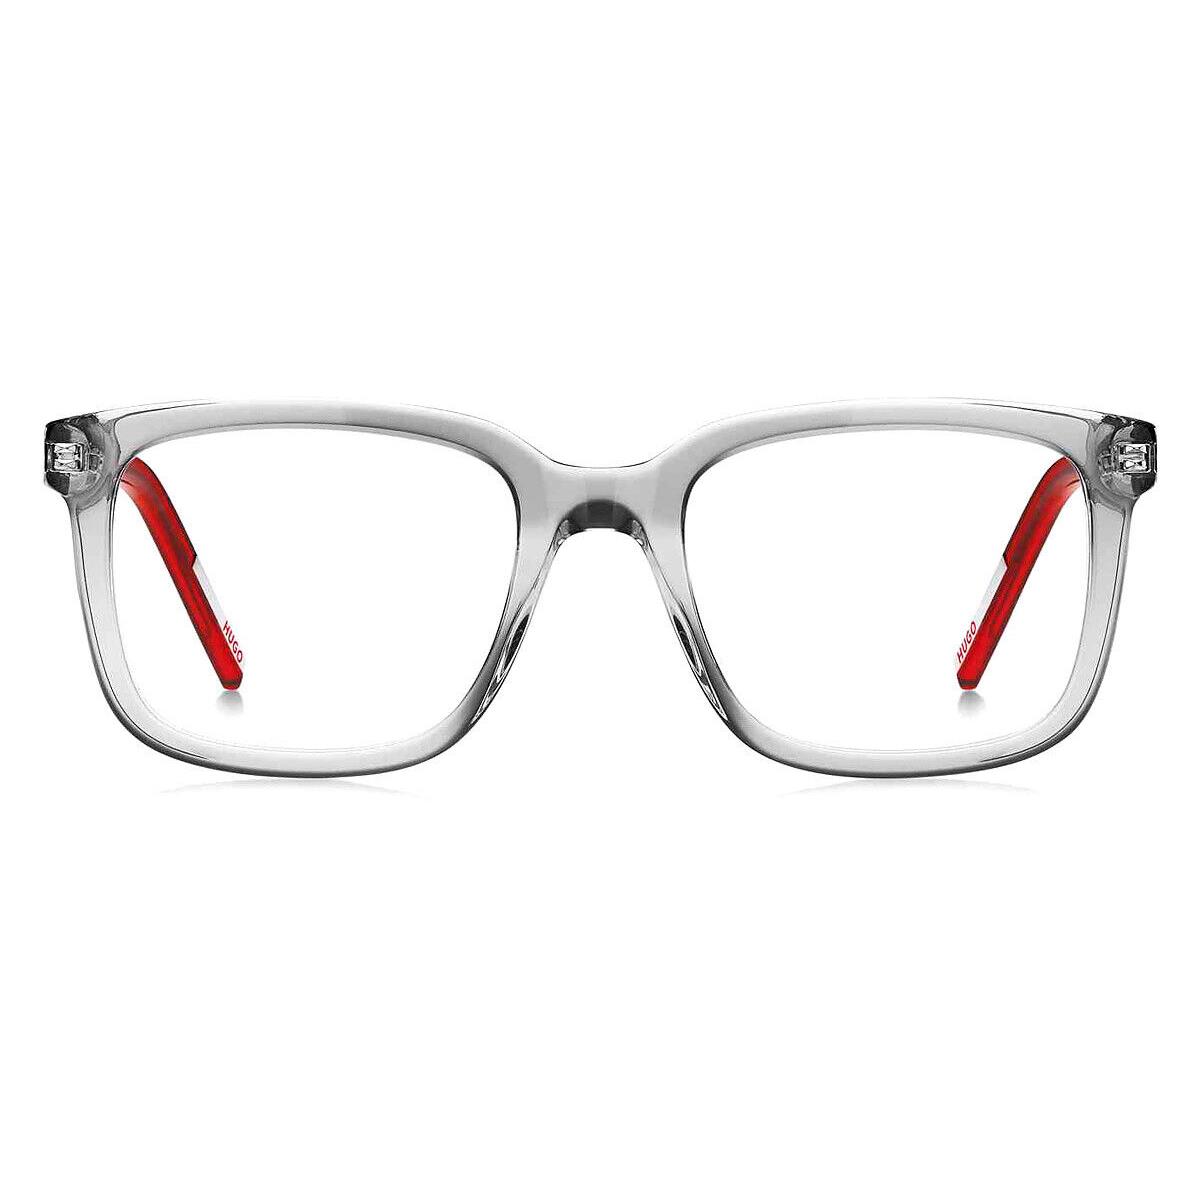 Hugo Boss Hhb Eyeglasses Men Gray Red 51mm